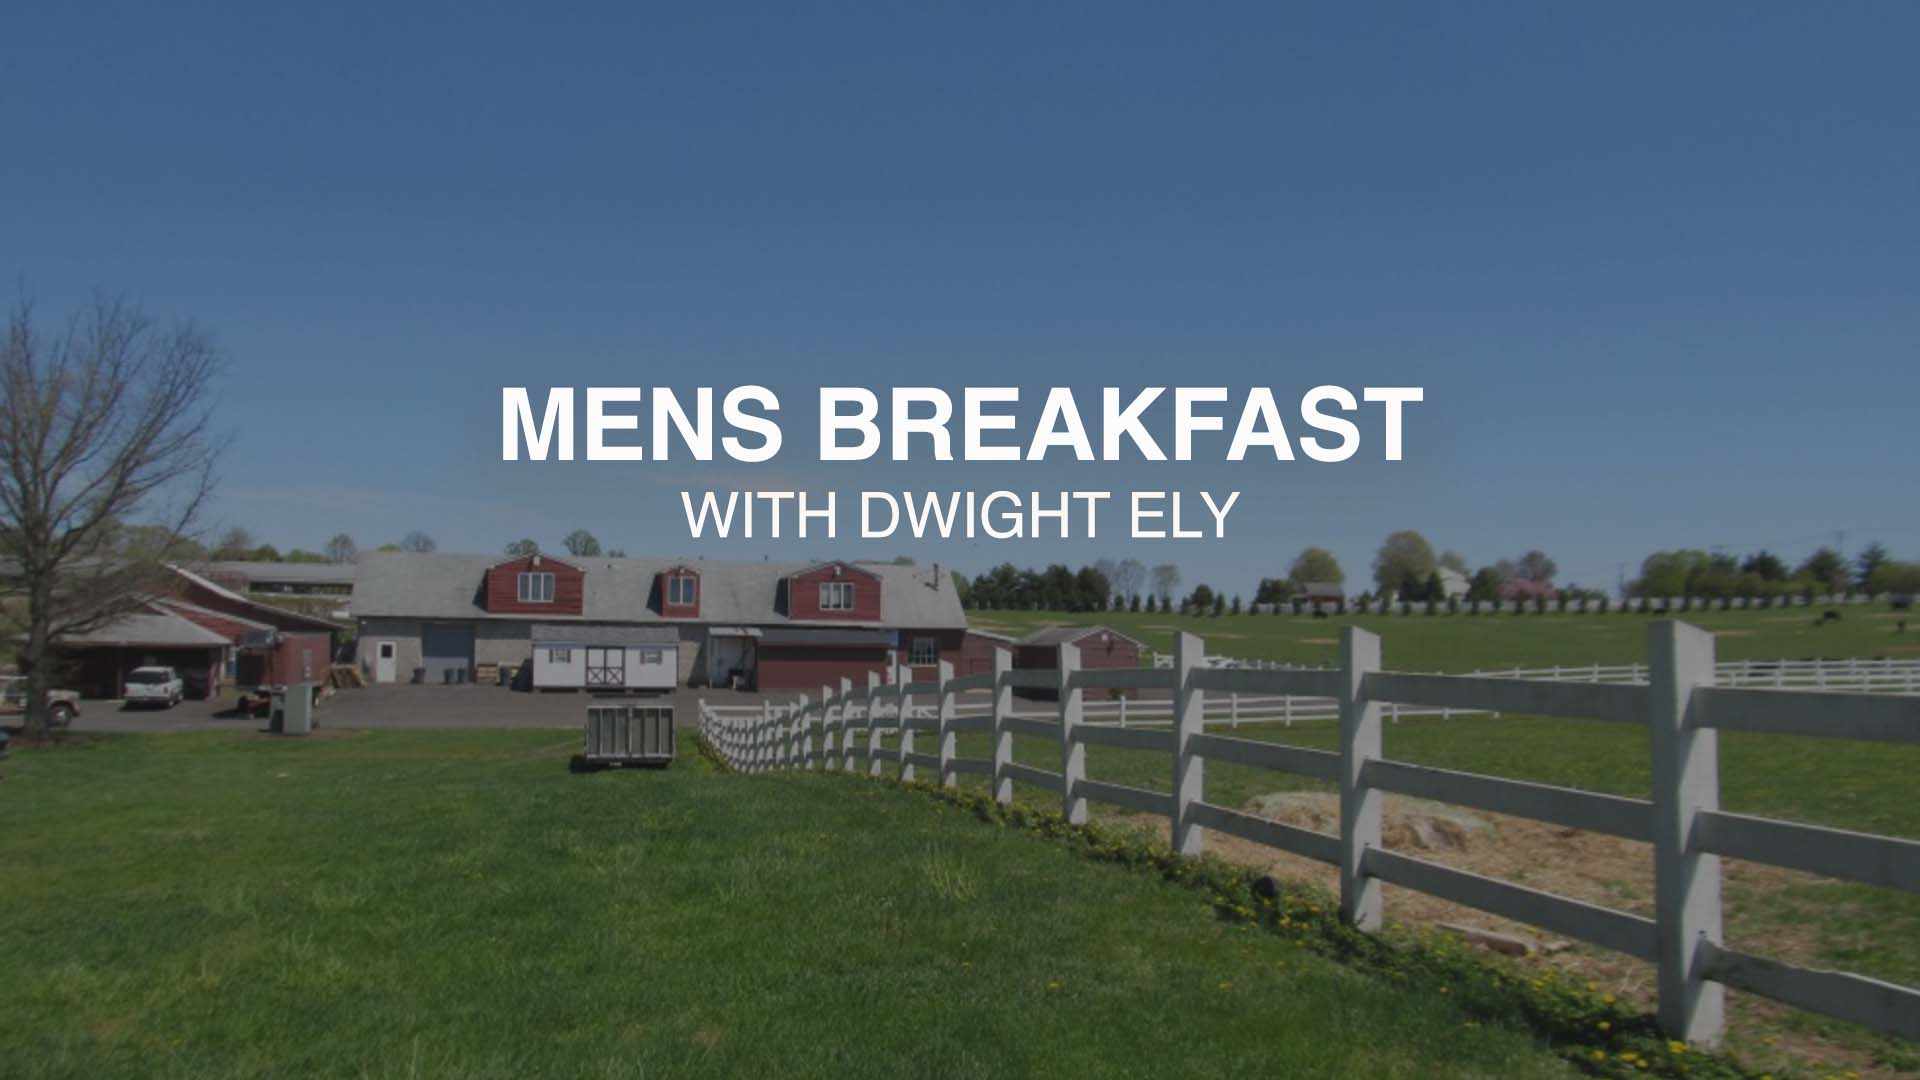 Men's Breakfast with Dwight Ely